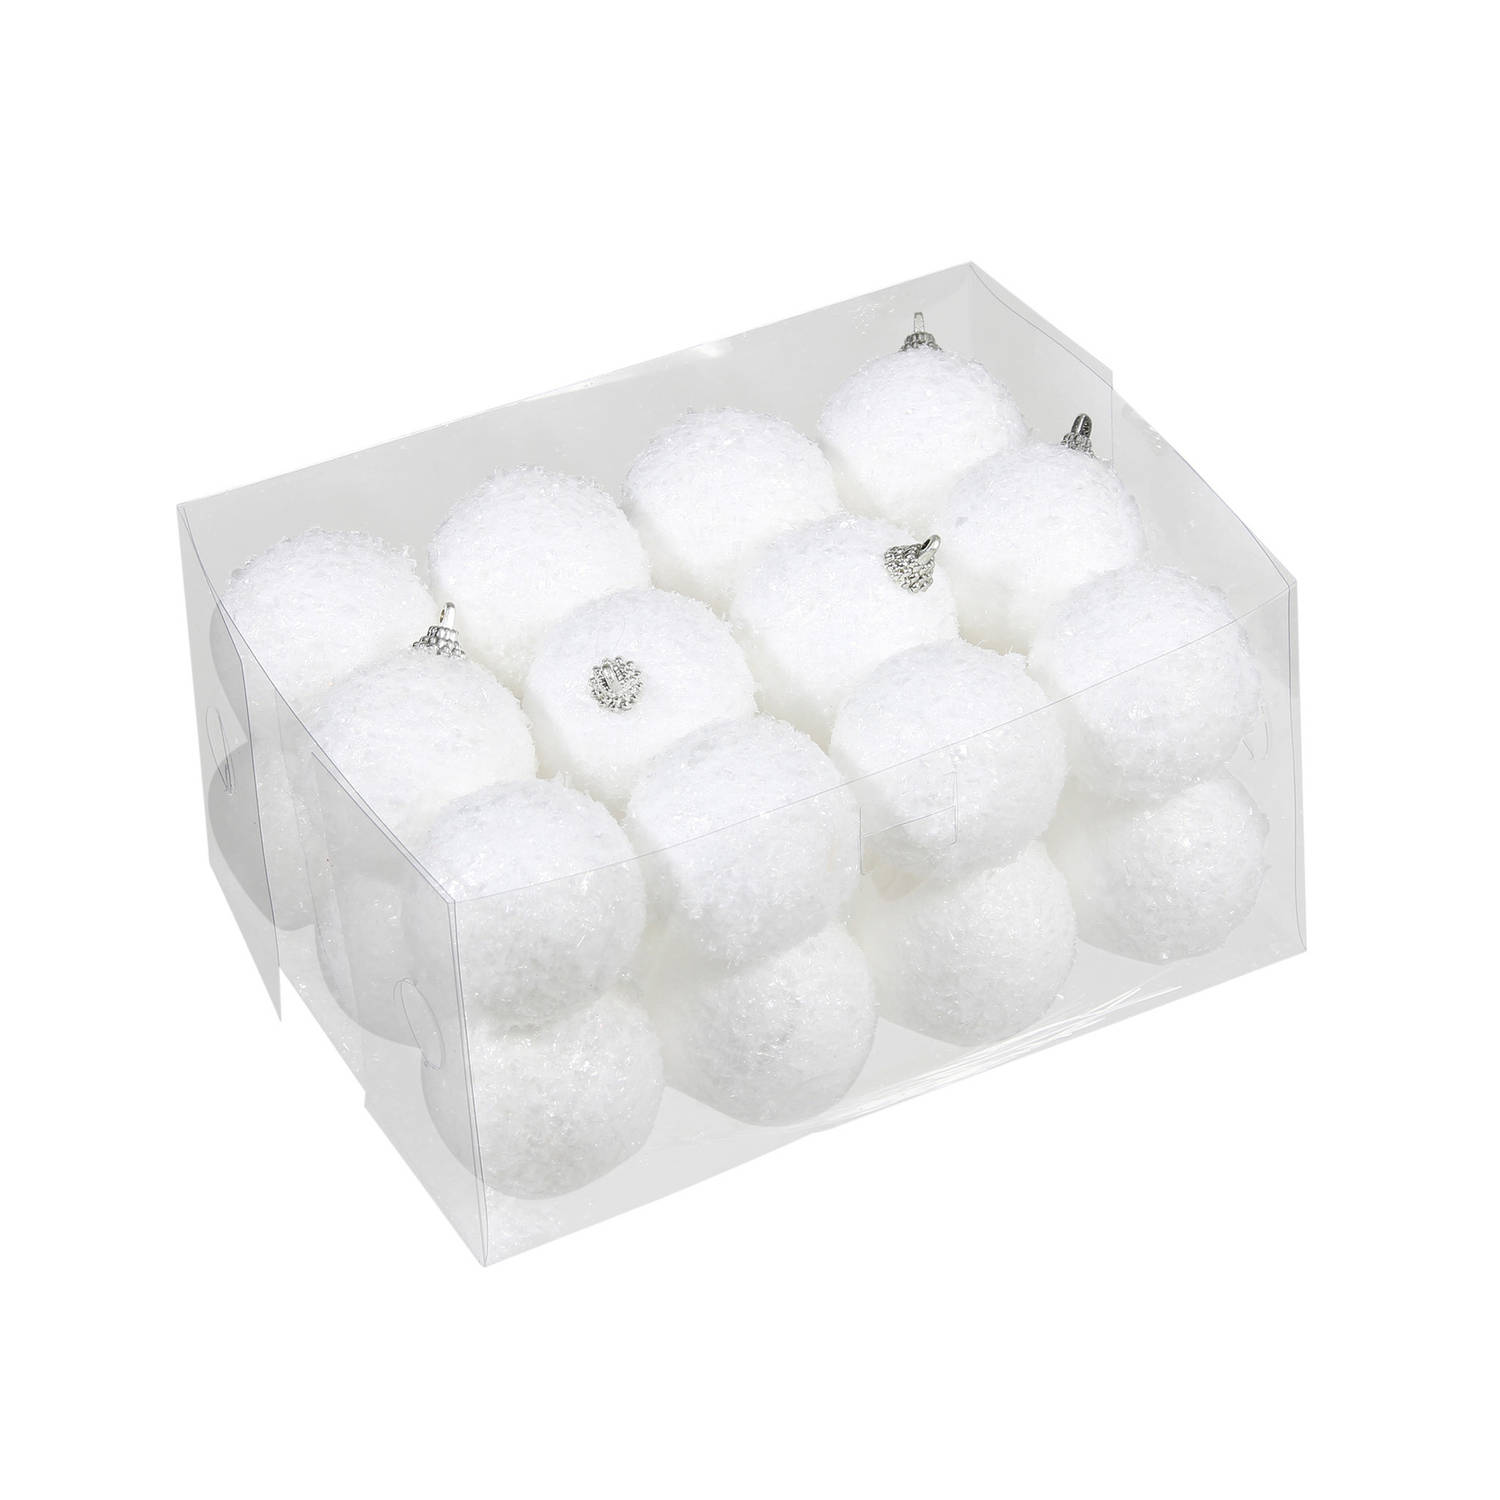 24x Kleine kunststof kerstballen met sneeuw effect wit 5 cm - Kerstbal